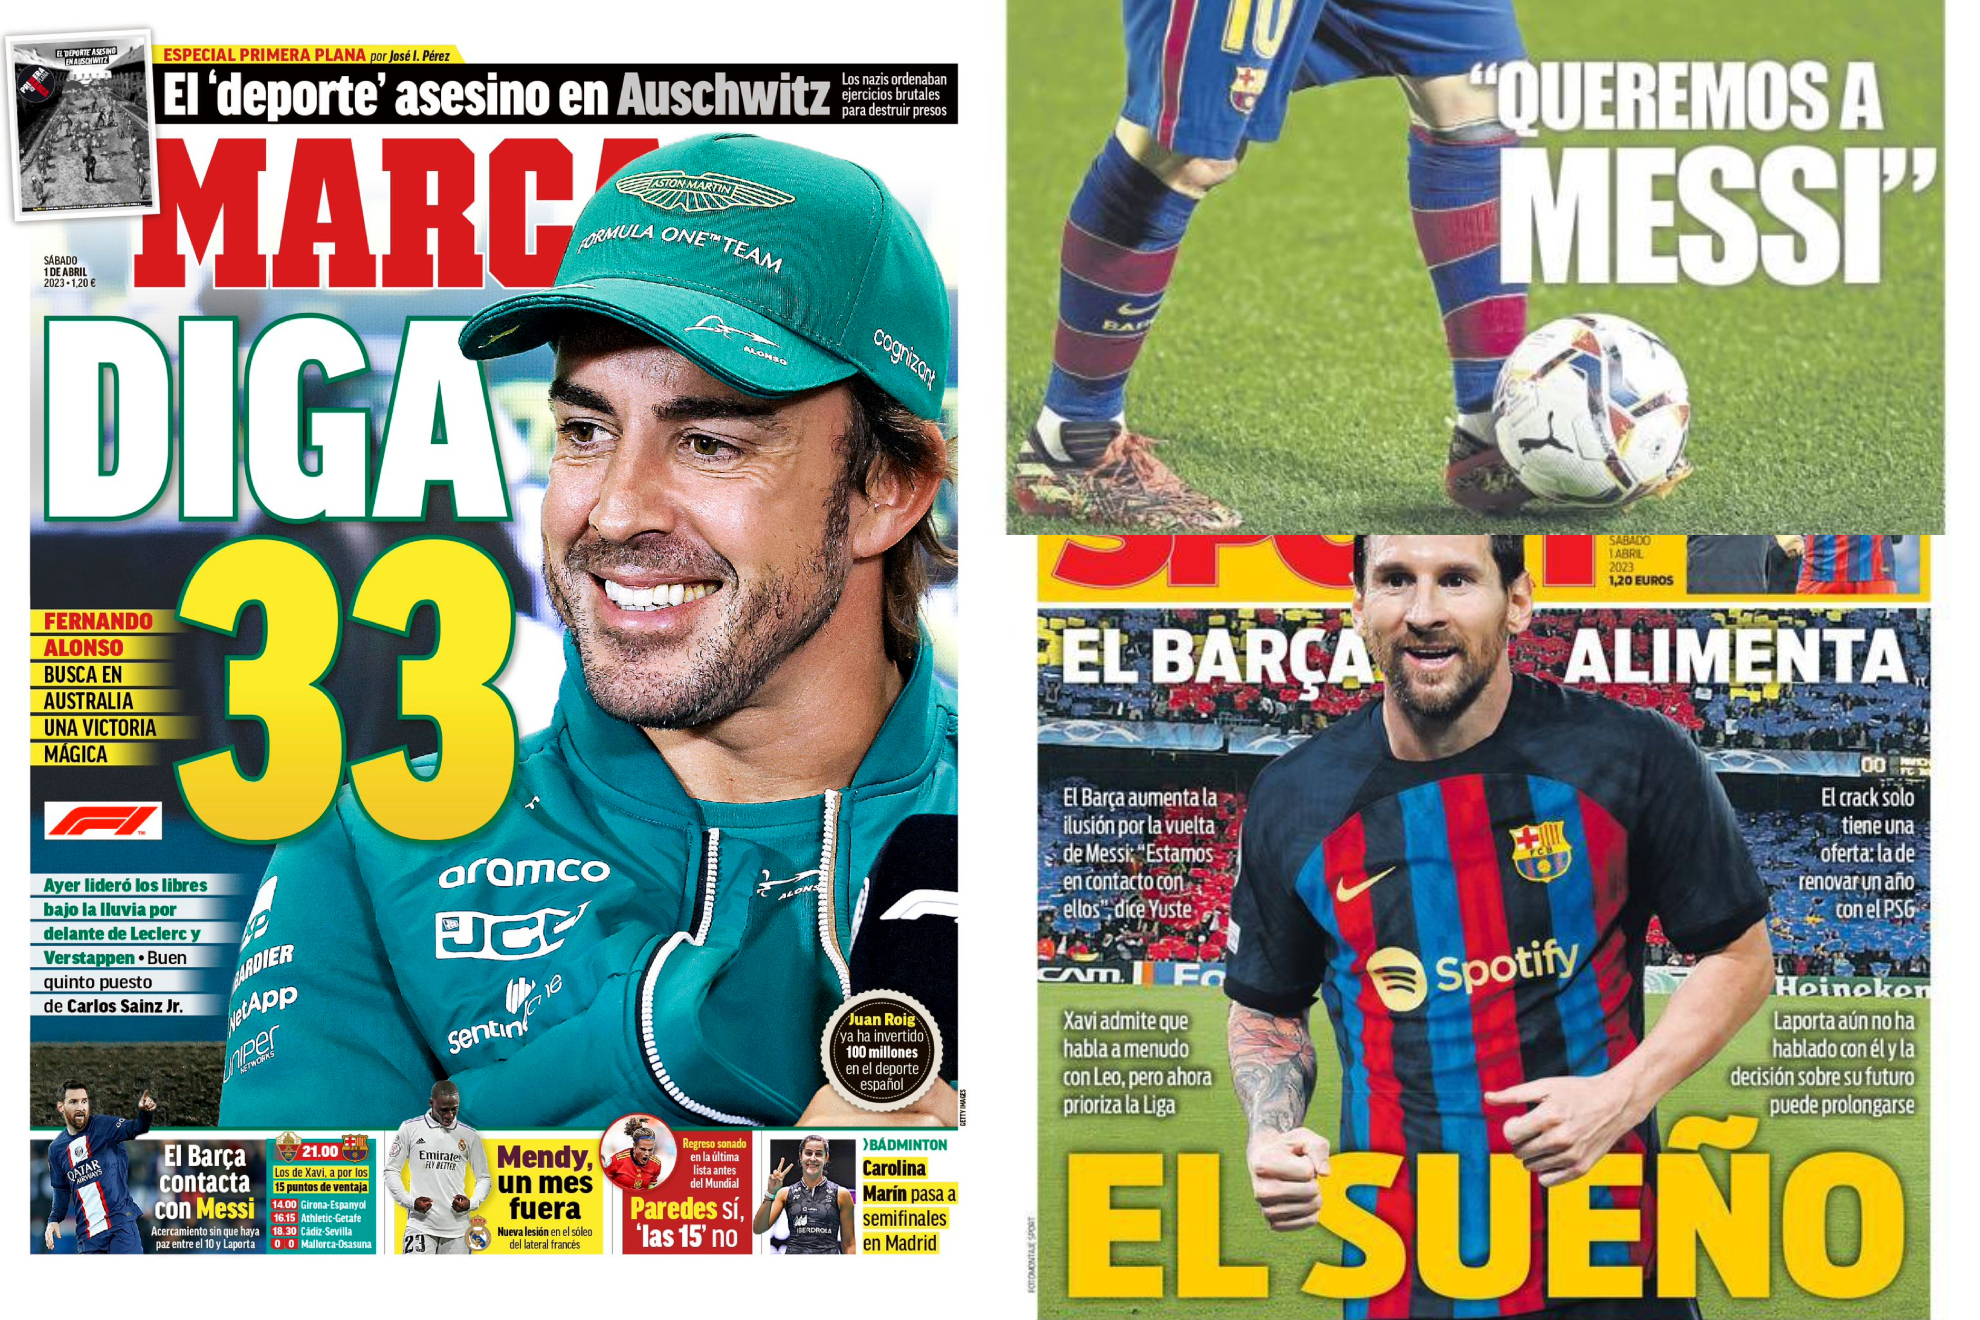 Las portadas: la 33 de Alonso, el sueño del Barça de un 'last dance' de Messi...